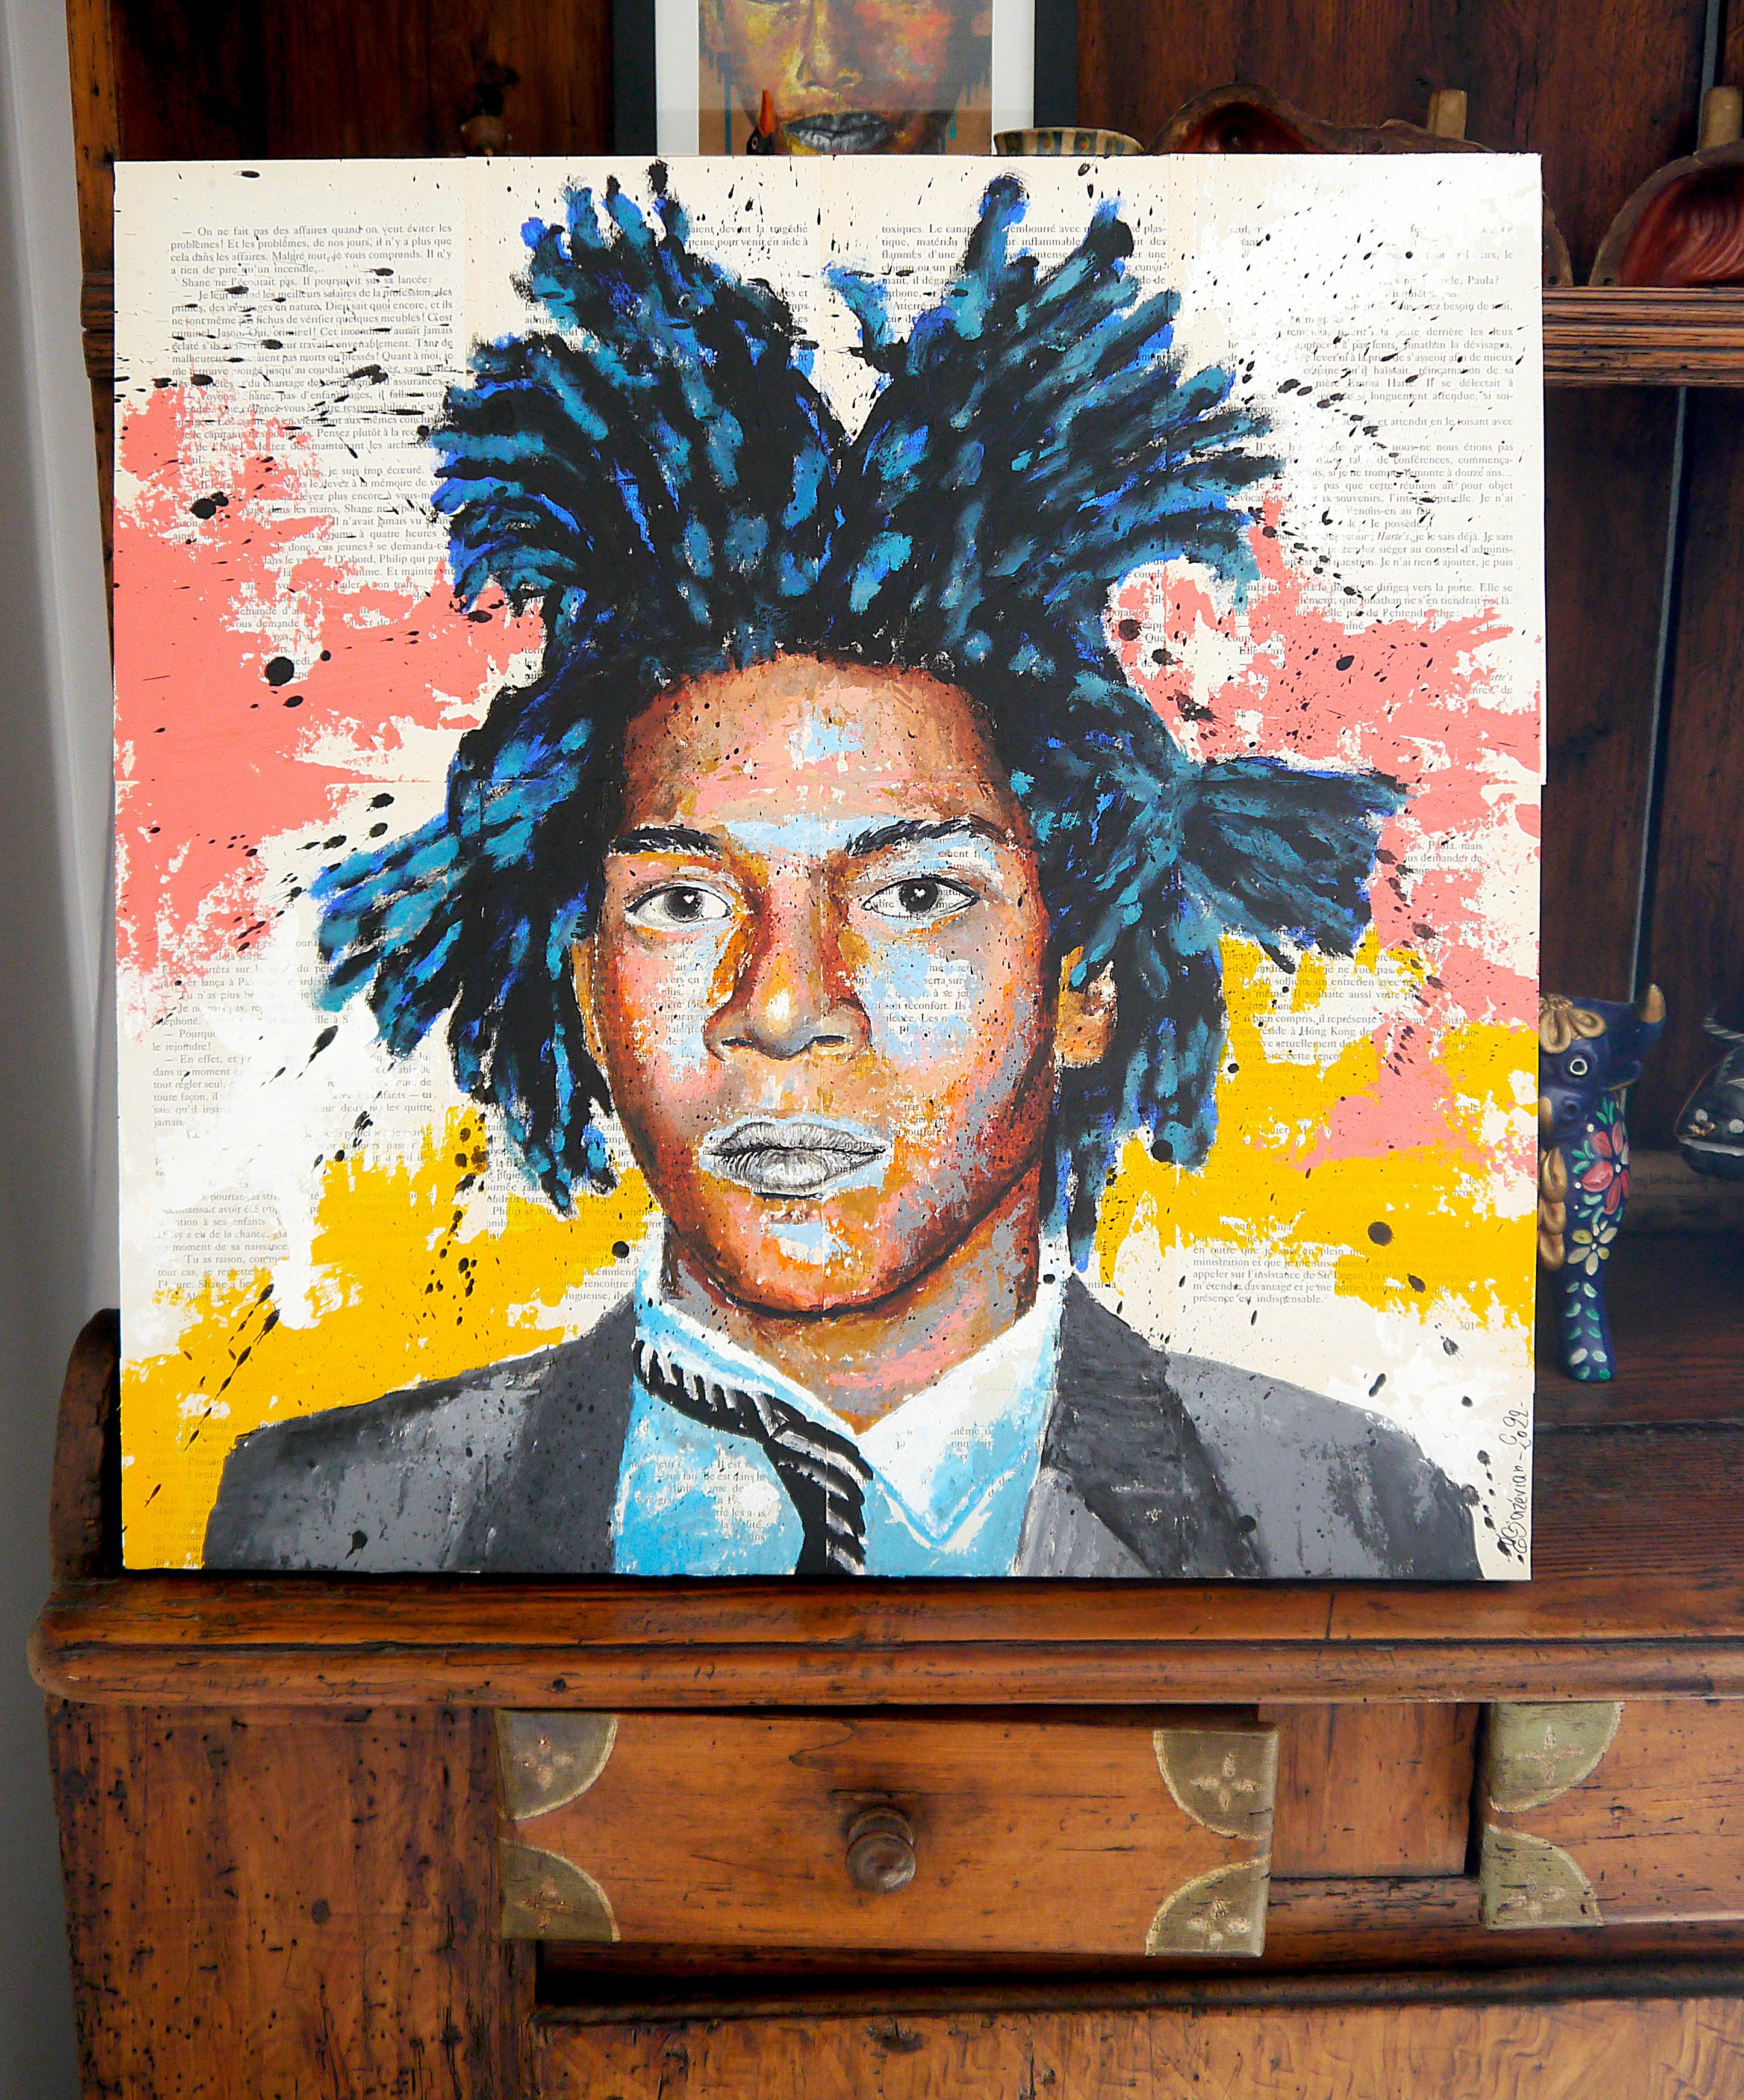 French School - Portrait Basquiat - Le Lion - Post Impressionist - Large - Painting by Bazevian DelaCapuciniere